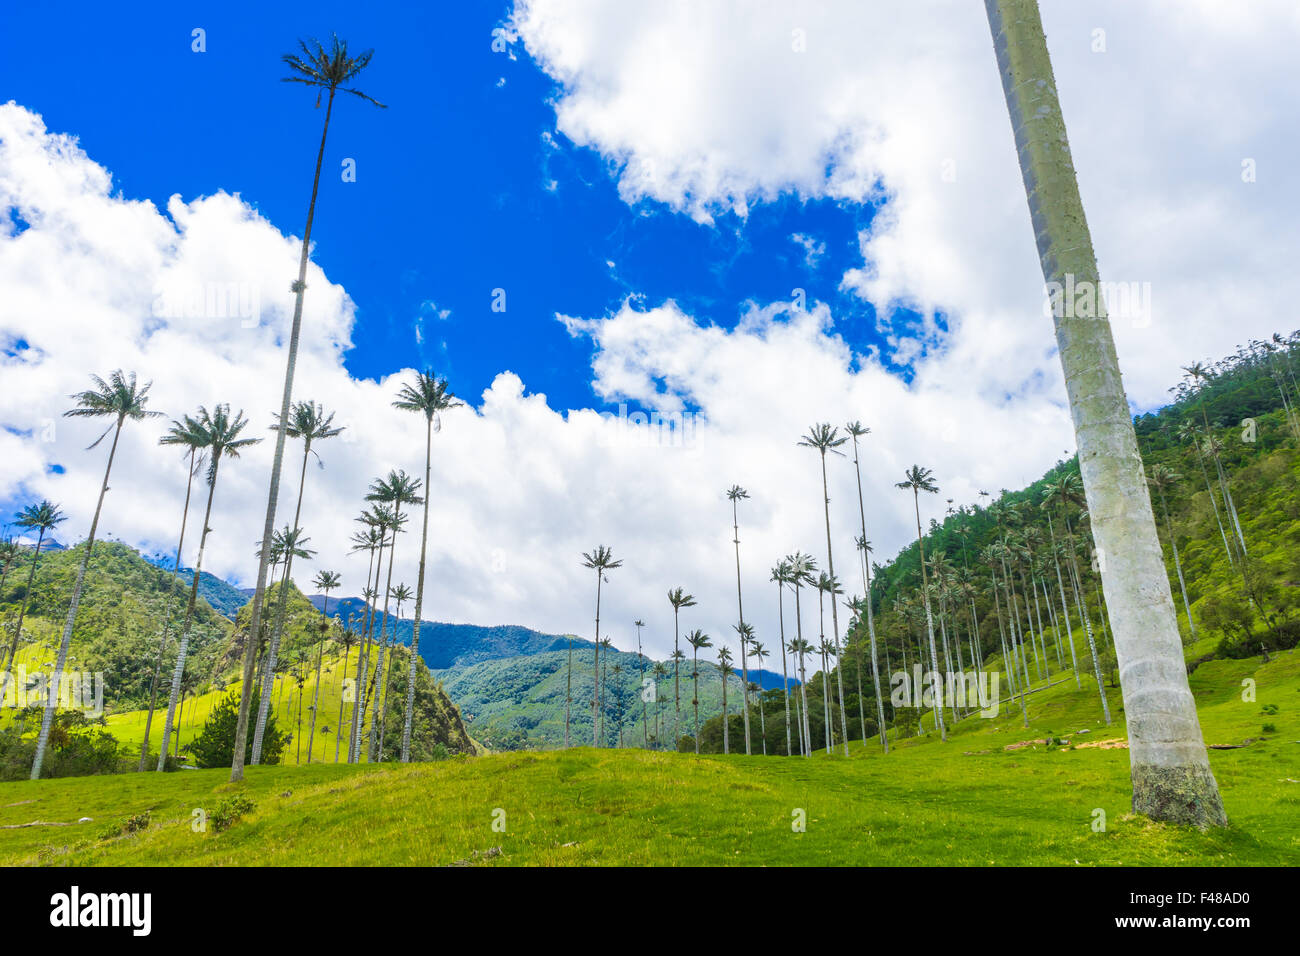 Le Valle de Cocora, accueil sur le plus grand des palmiers. Juin, 2015. Quindio, la Colombie. Banque D'Images